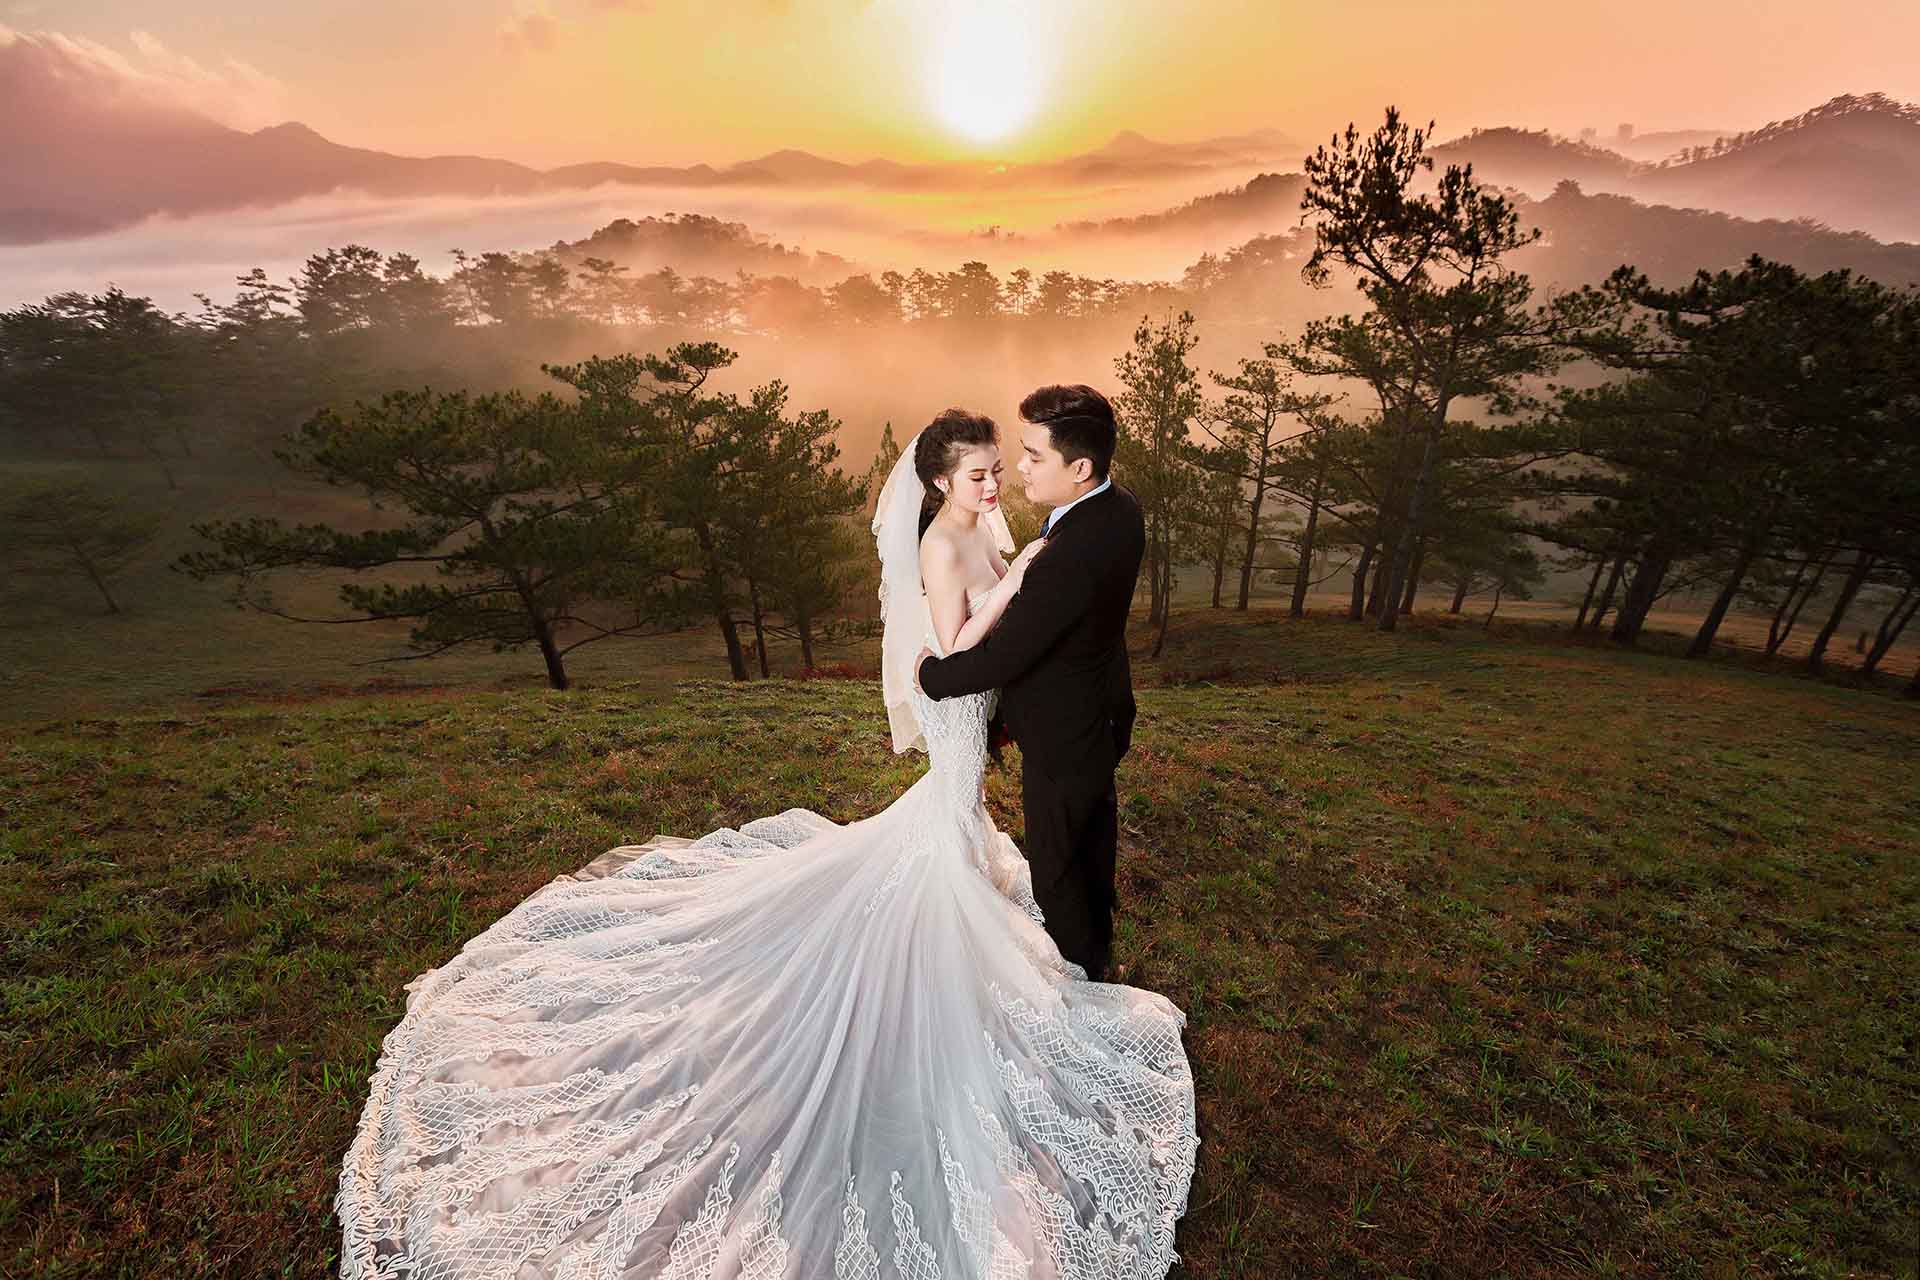 Tổng hợp địa điểm chụp hình cưới đẹp nhất Đà Lạt 